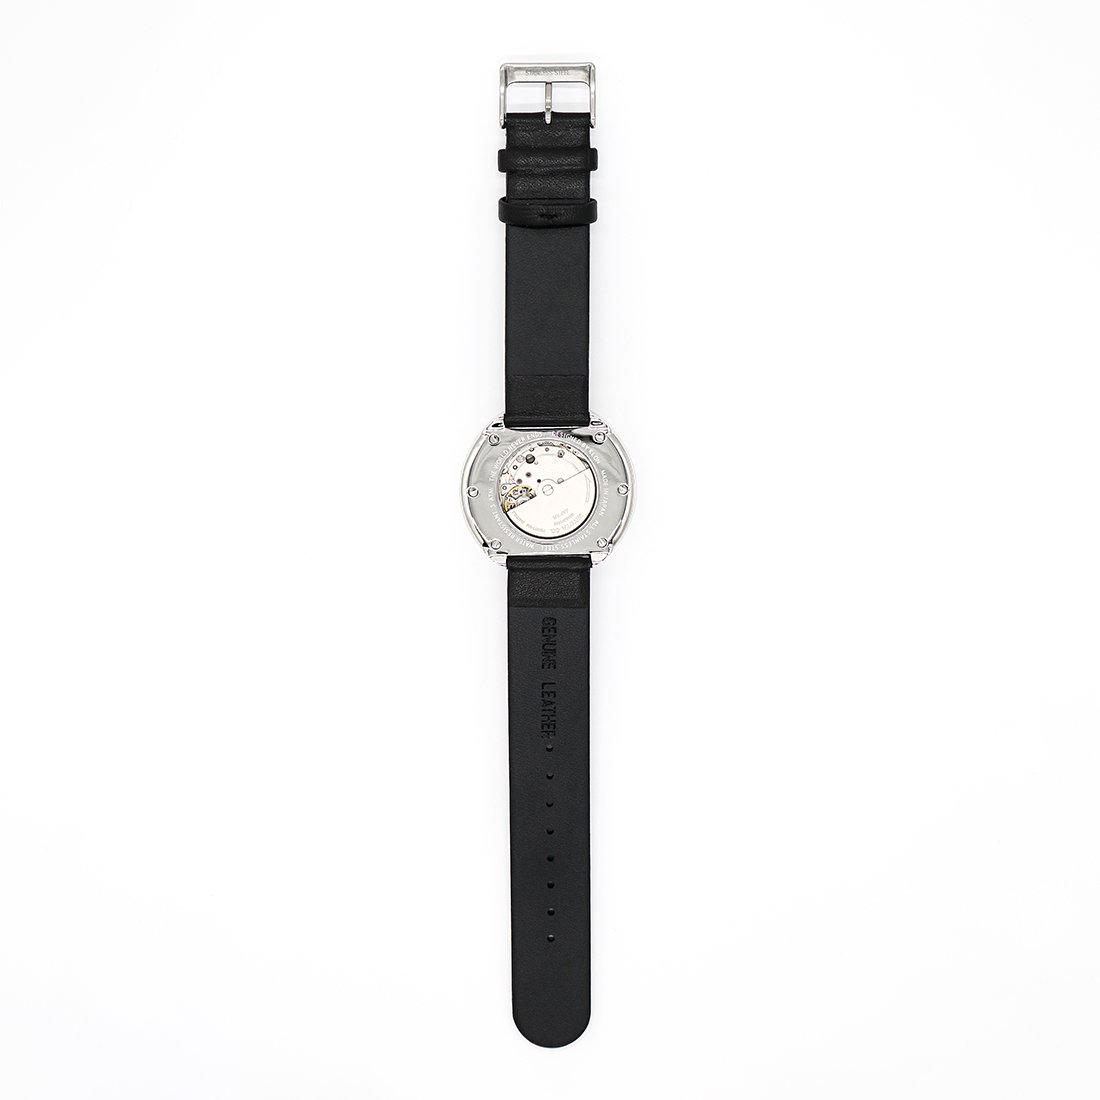 KLON AUTOMATIC WATCH BLACK LEATHER -STANDARD- 43mm カジュアル 腕時計